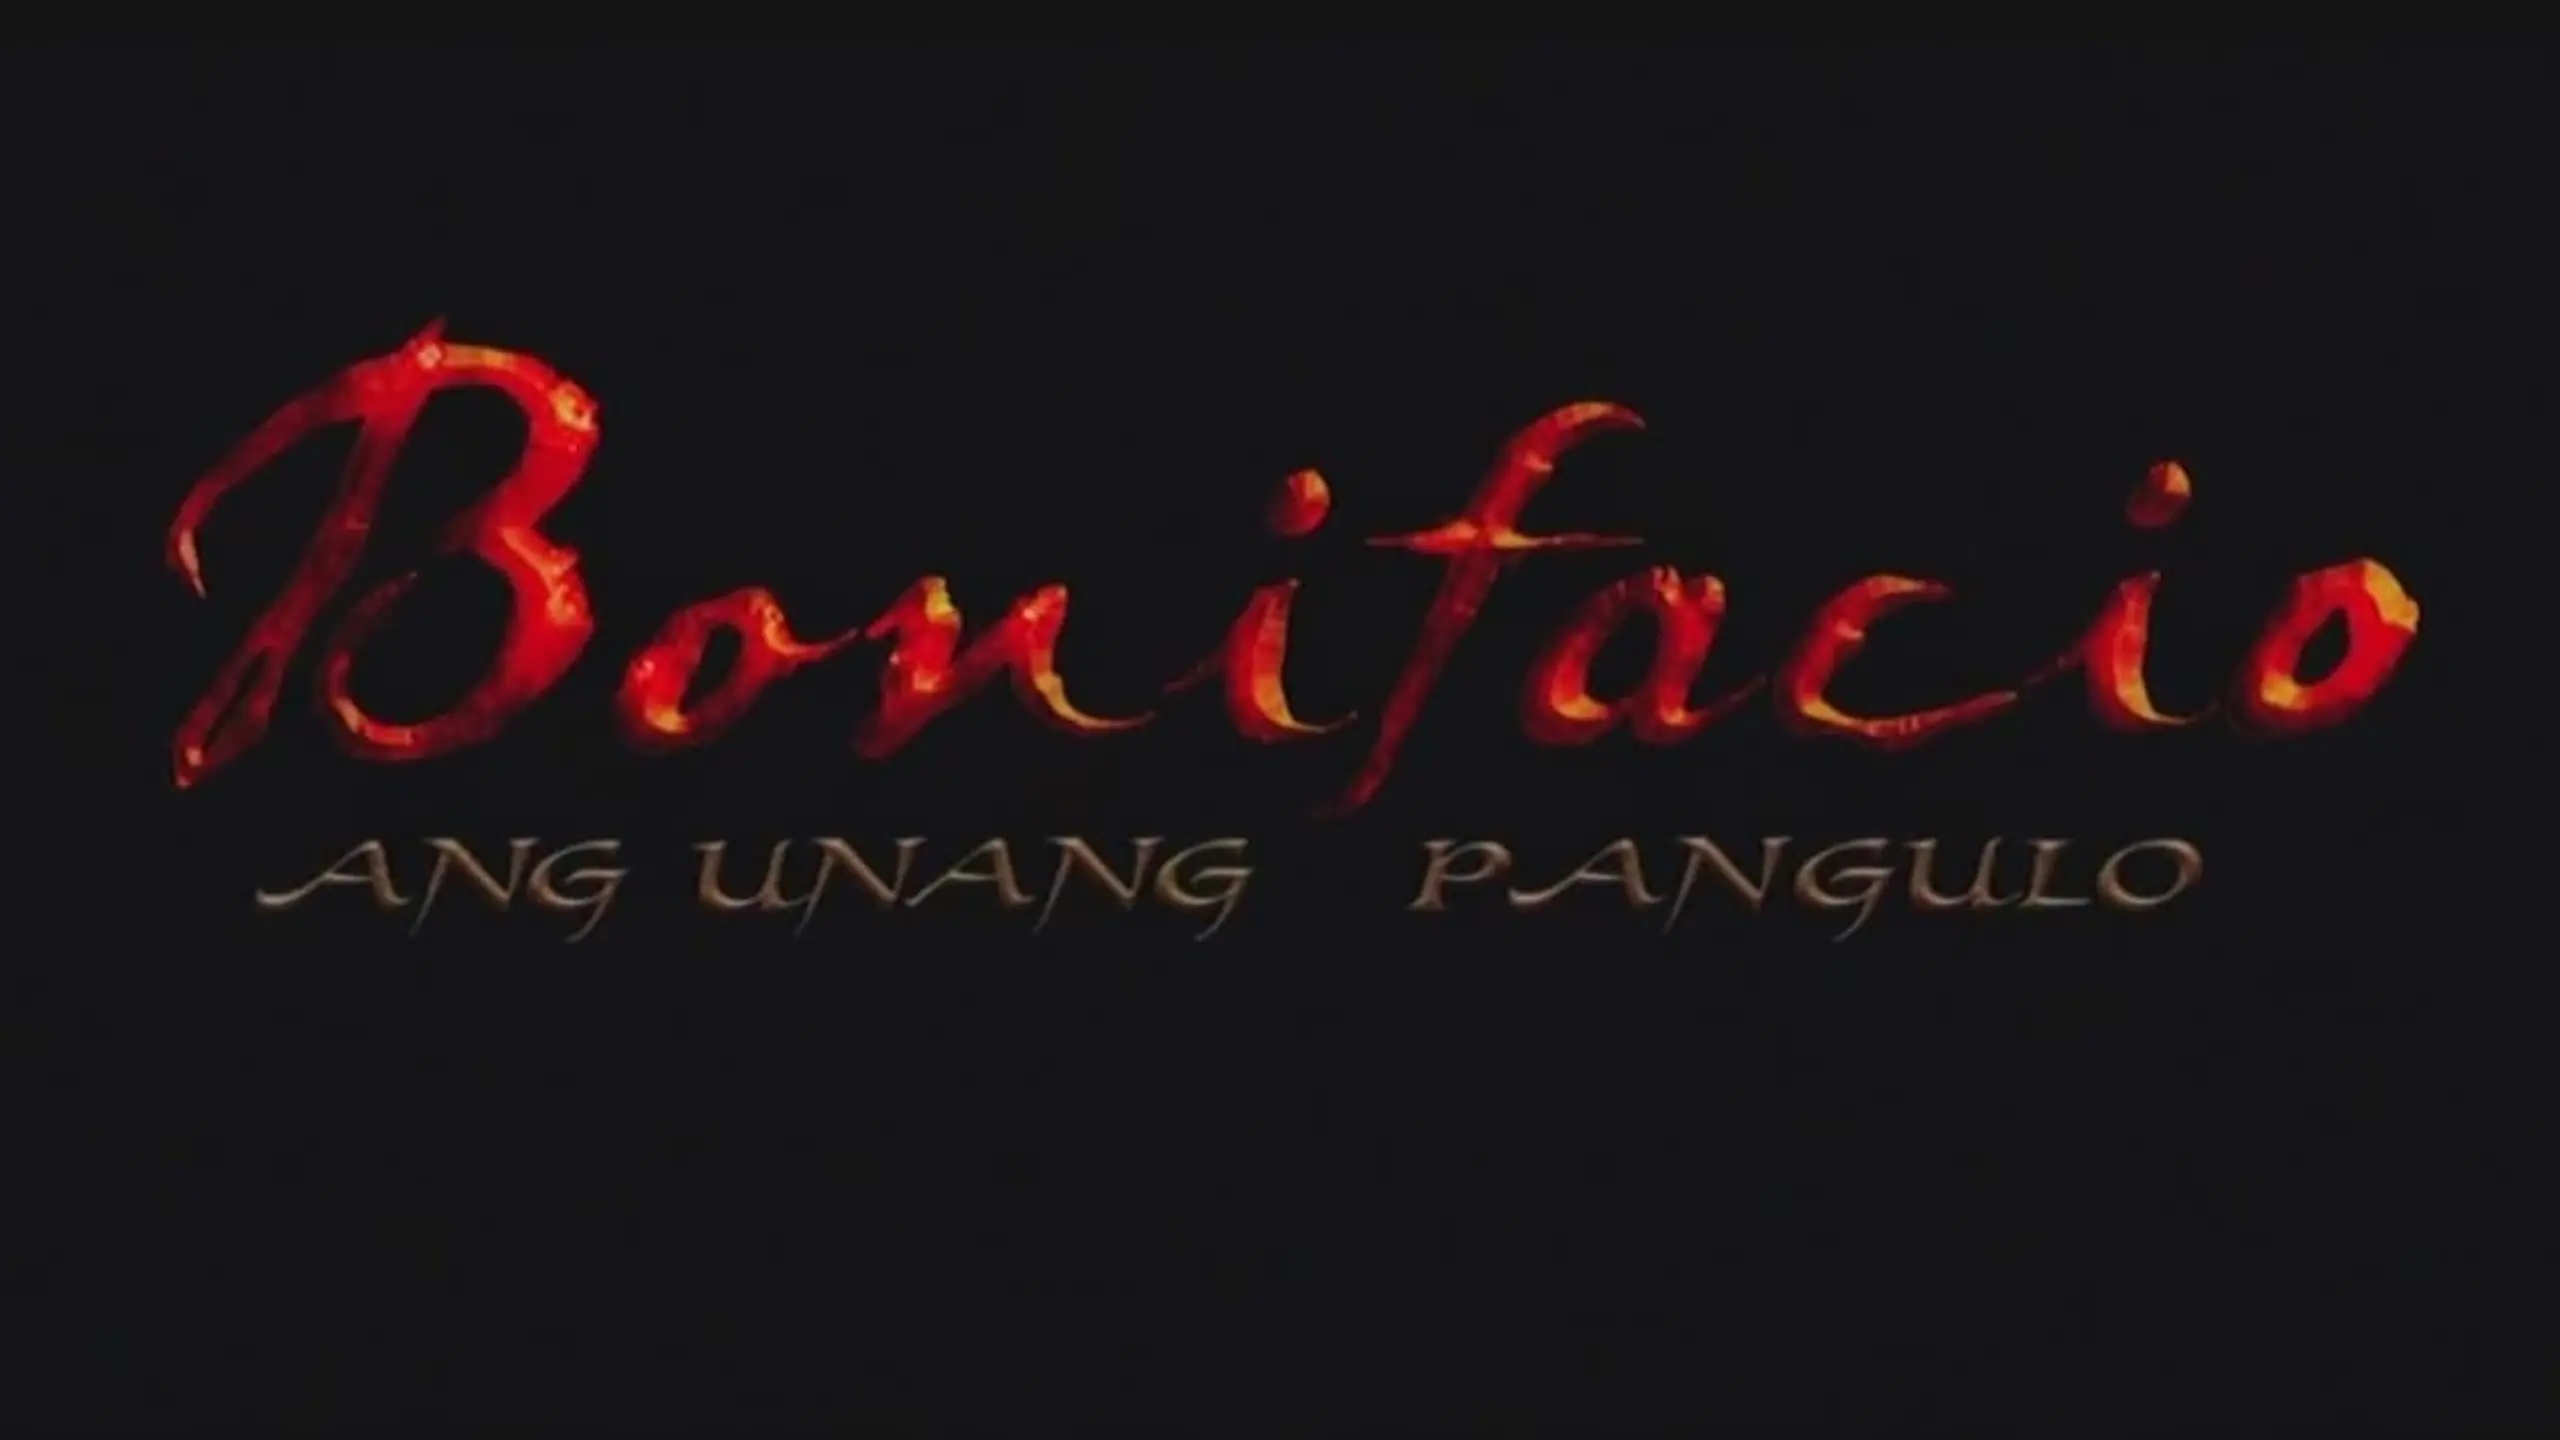 Bonifacio: Ang Unang Pangulo